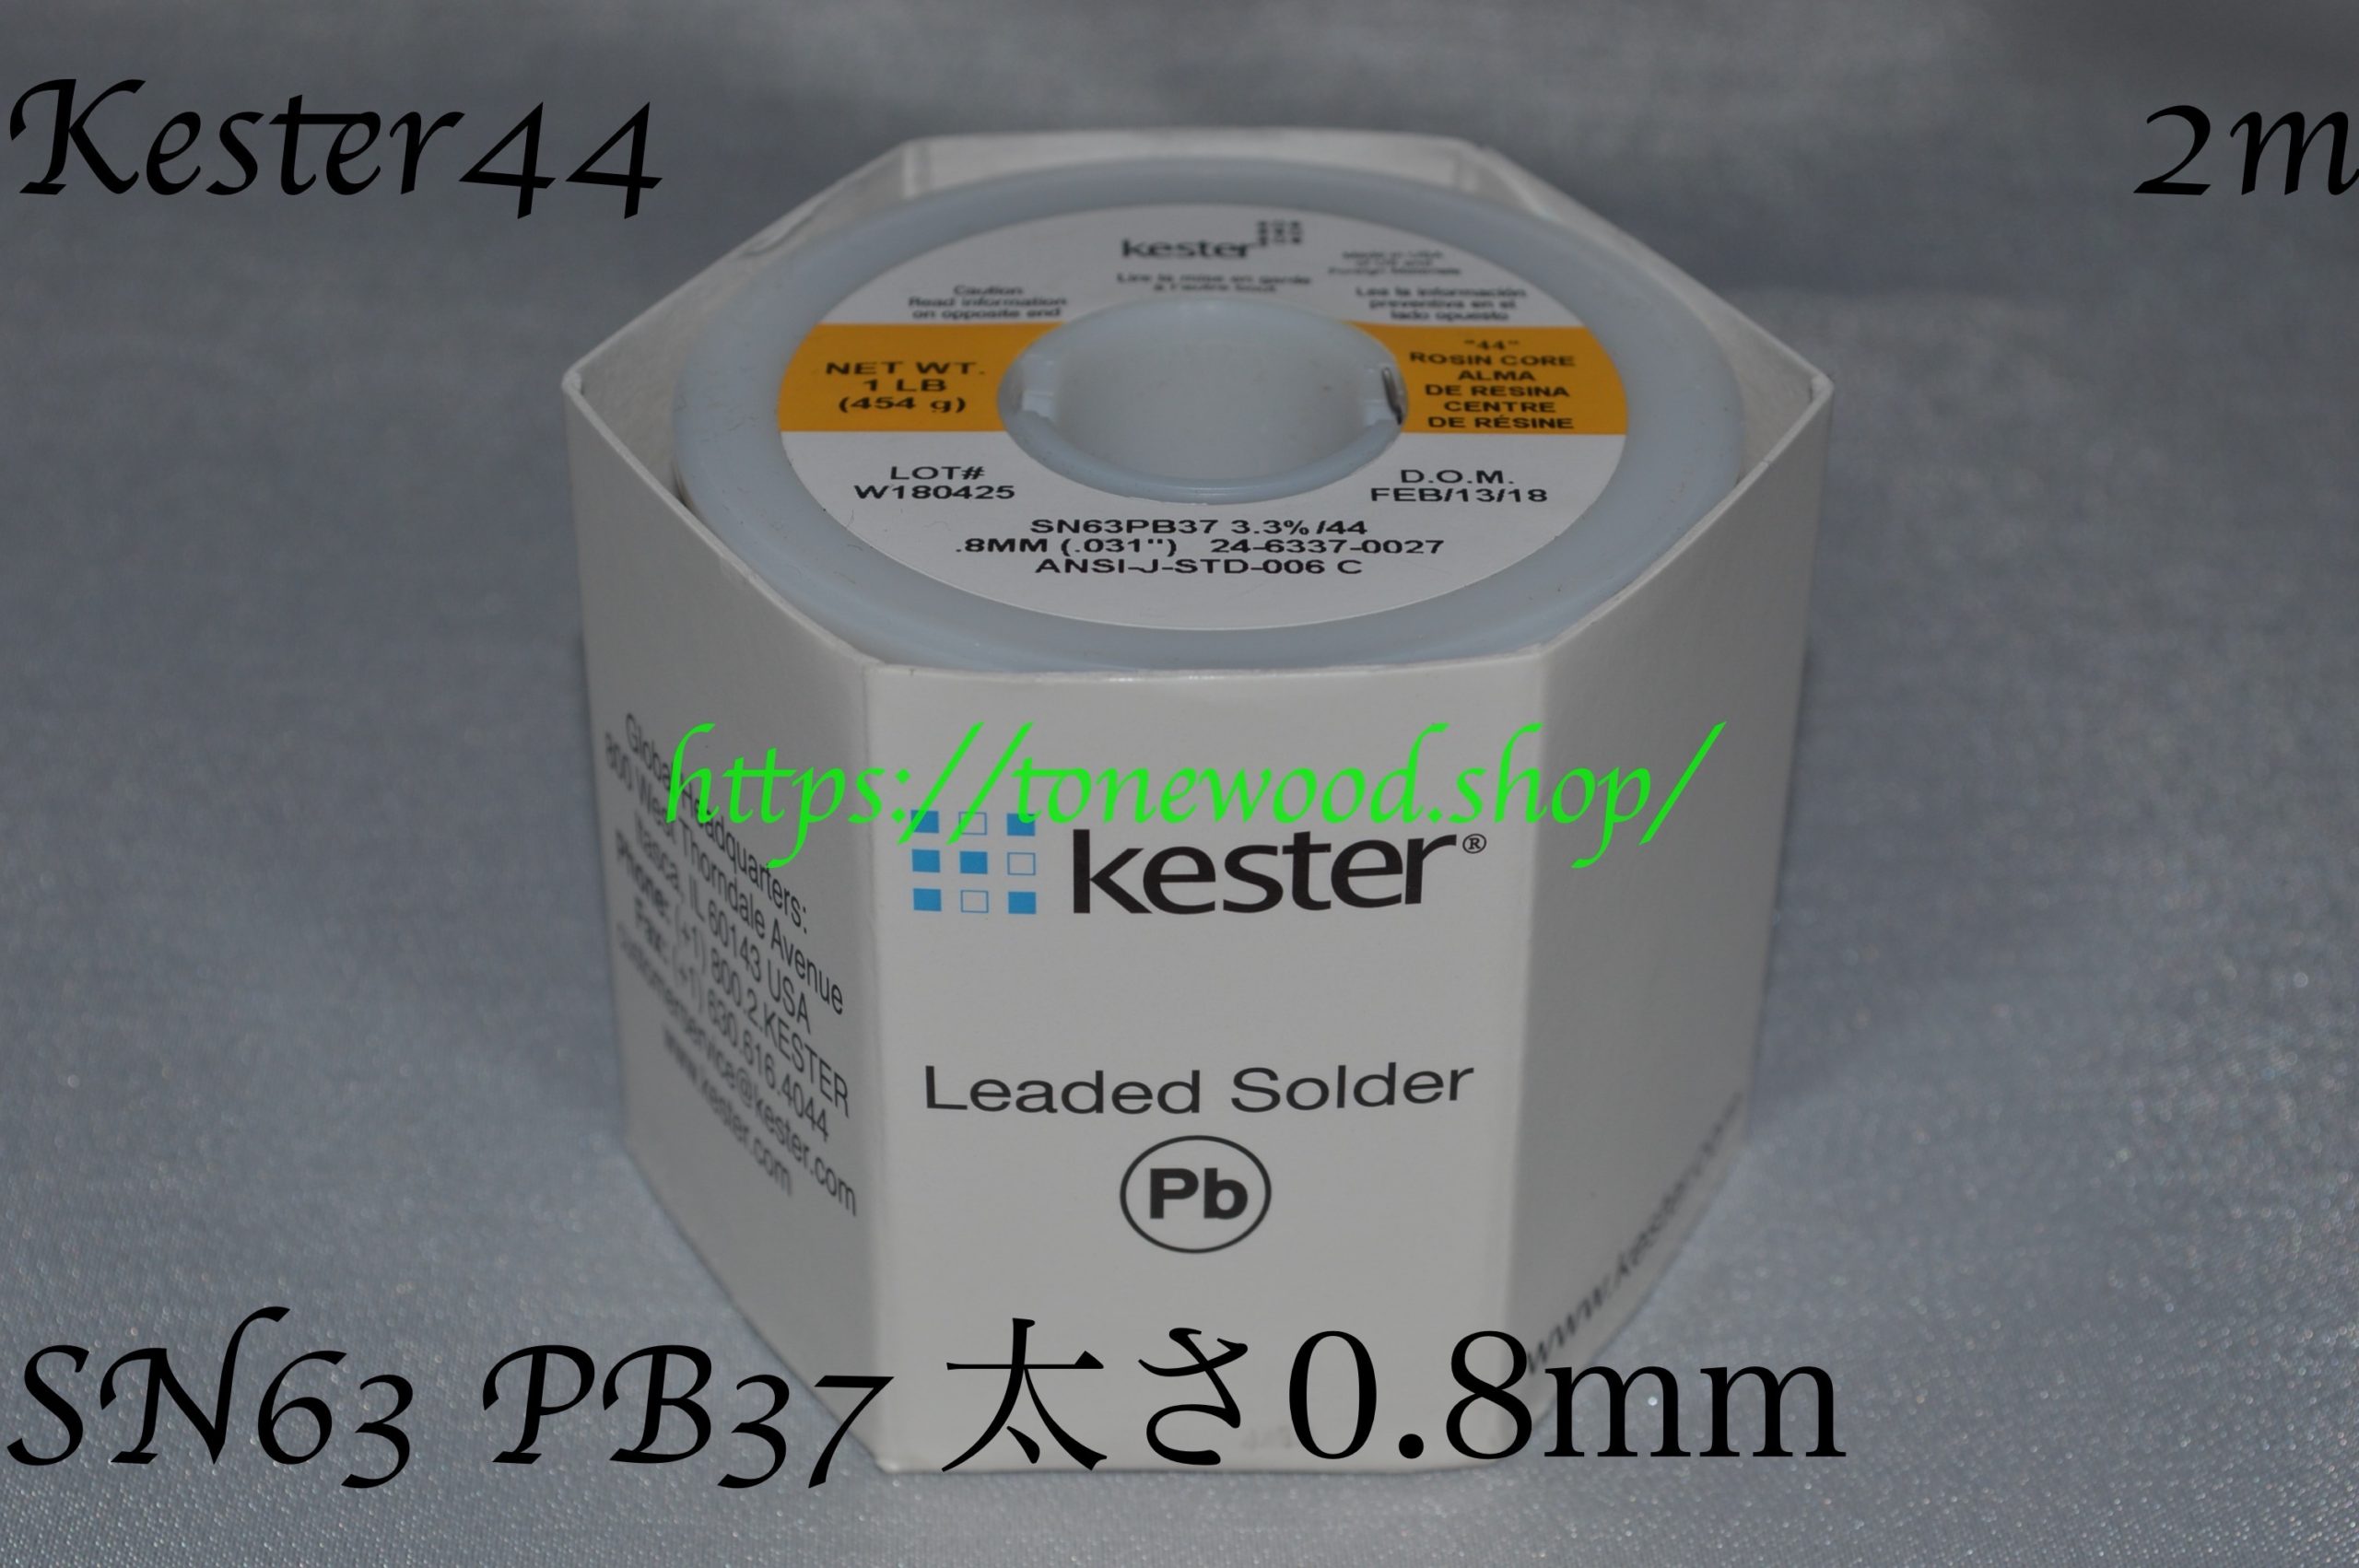 Kester44-24-6337-0027-2m-cut